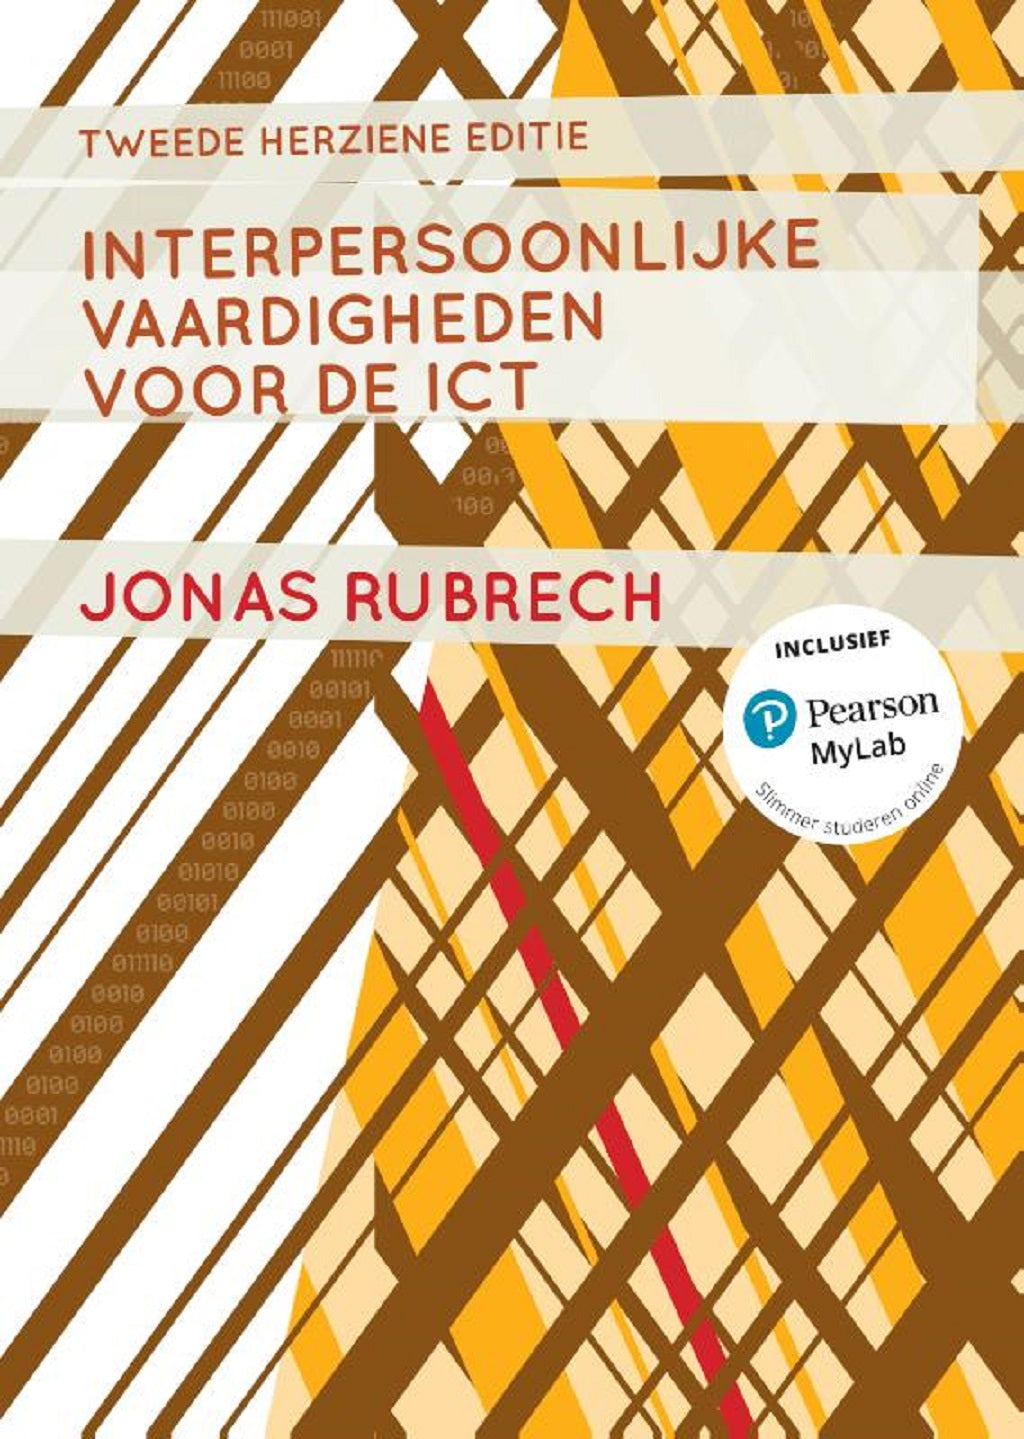 Interpersoonlijke vaardigheden voor de ICT, 2e herziene edite (Print boek + MyLab toegangscode)